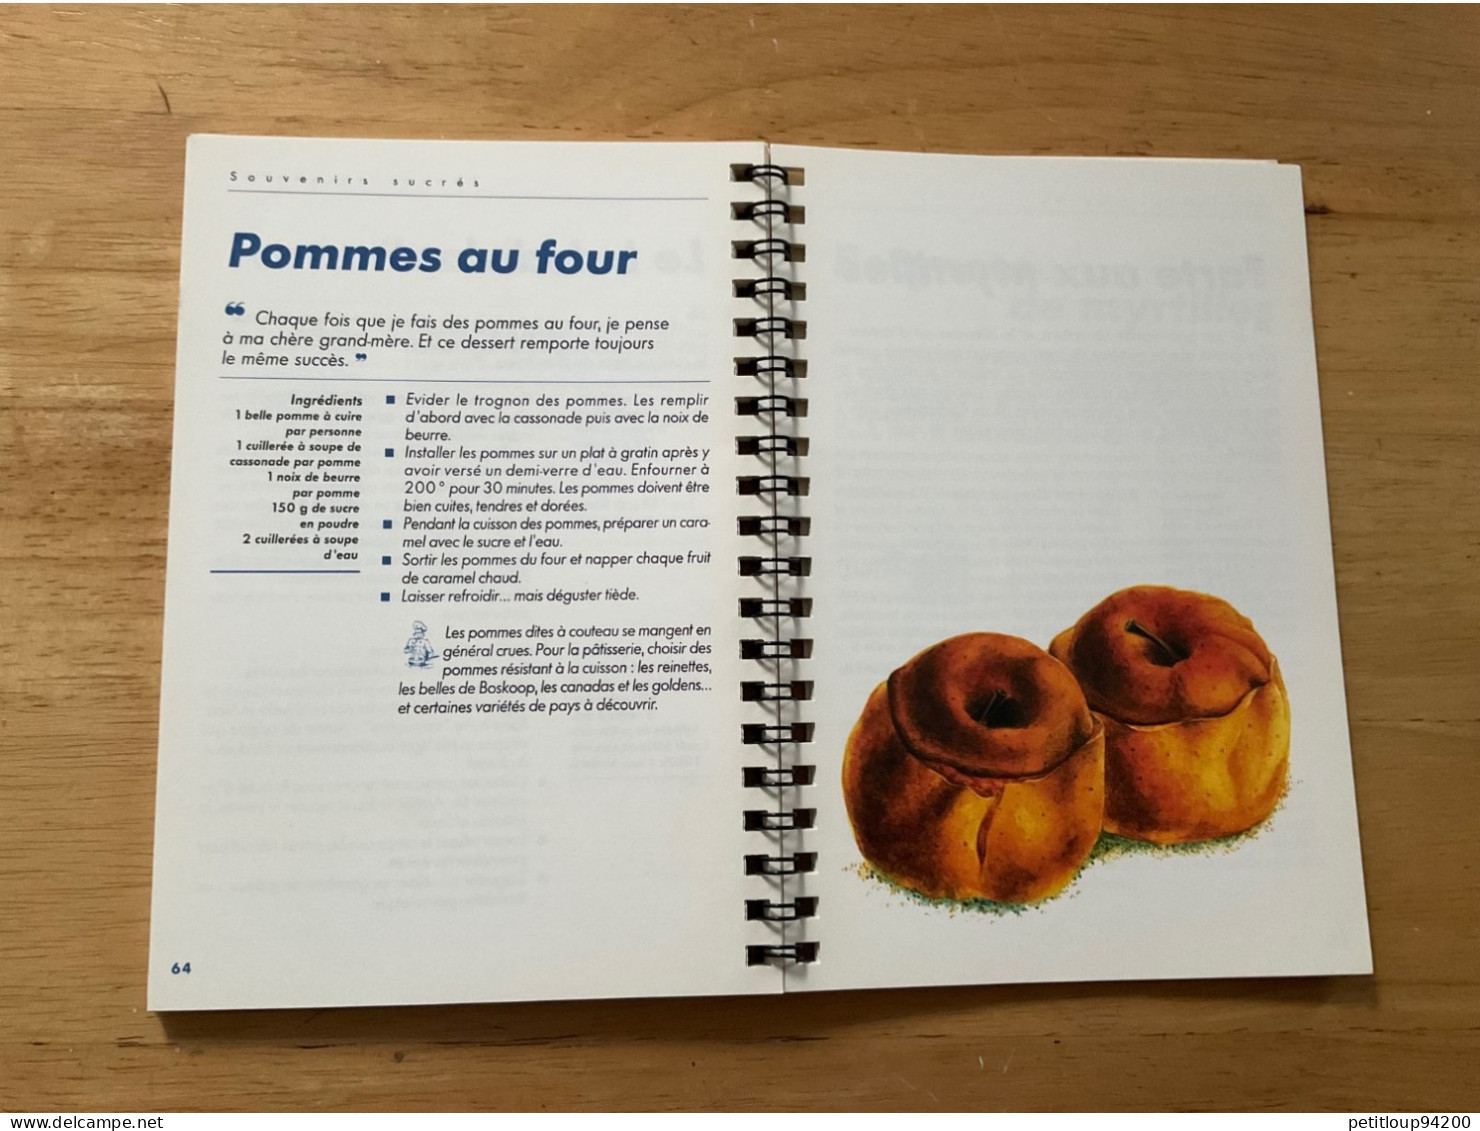 SOUVENIRS SUCRÉS Desserts et Douceurs de l’Enfance  CANAL+  Éditions Mille et une Nuits  EMILE ROUX